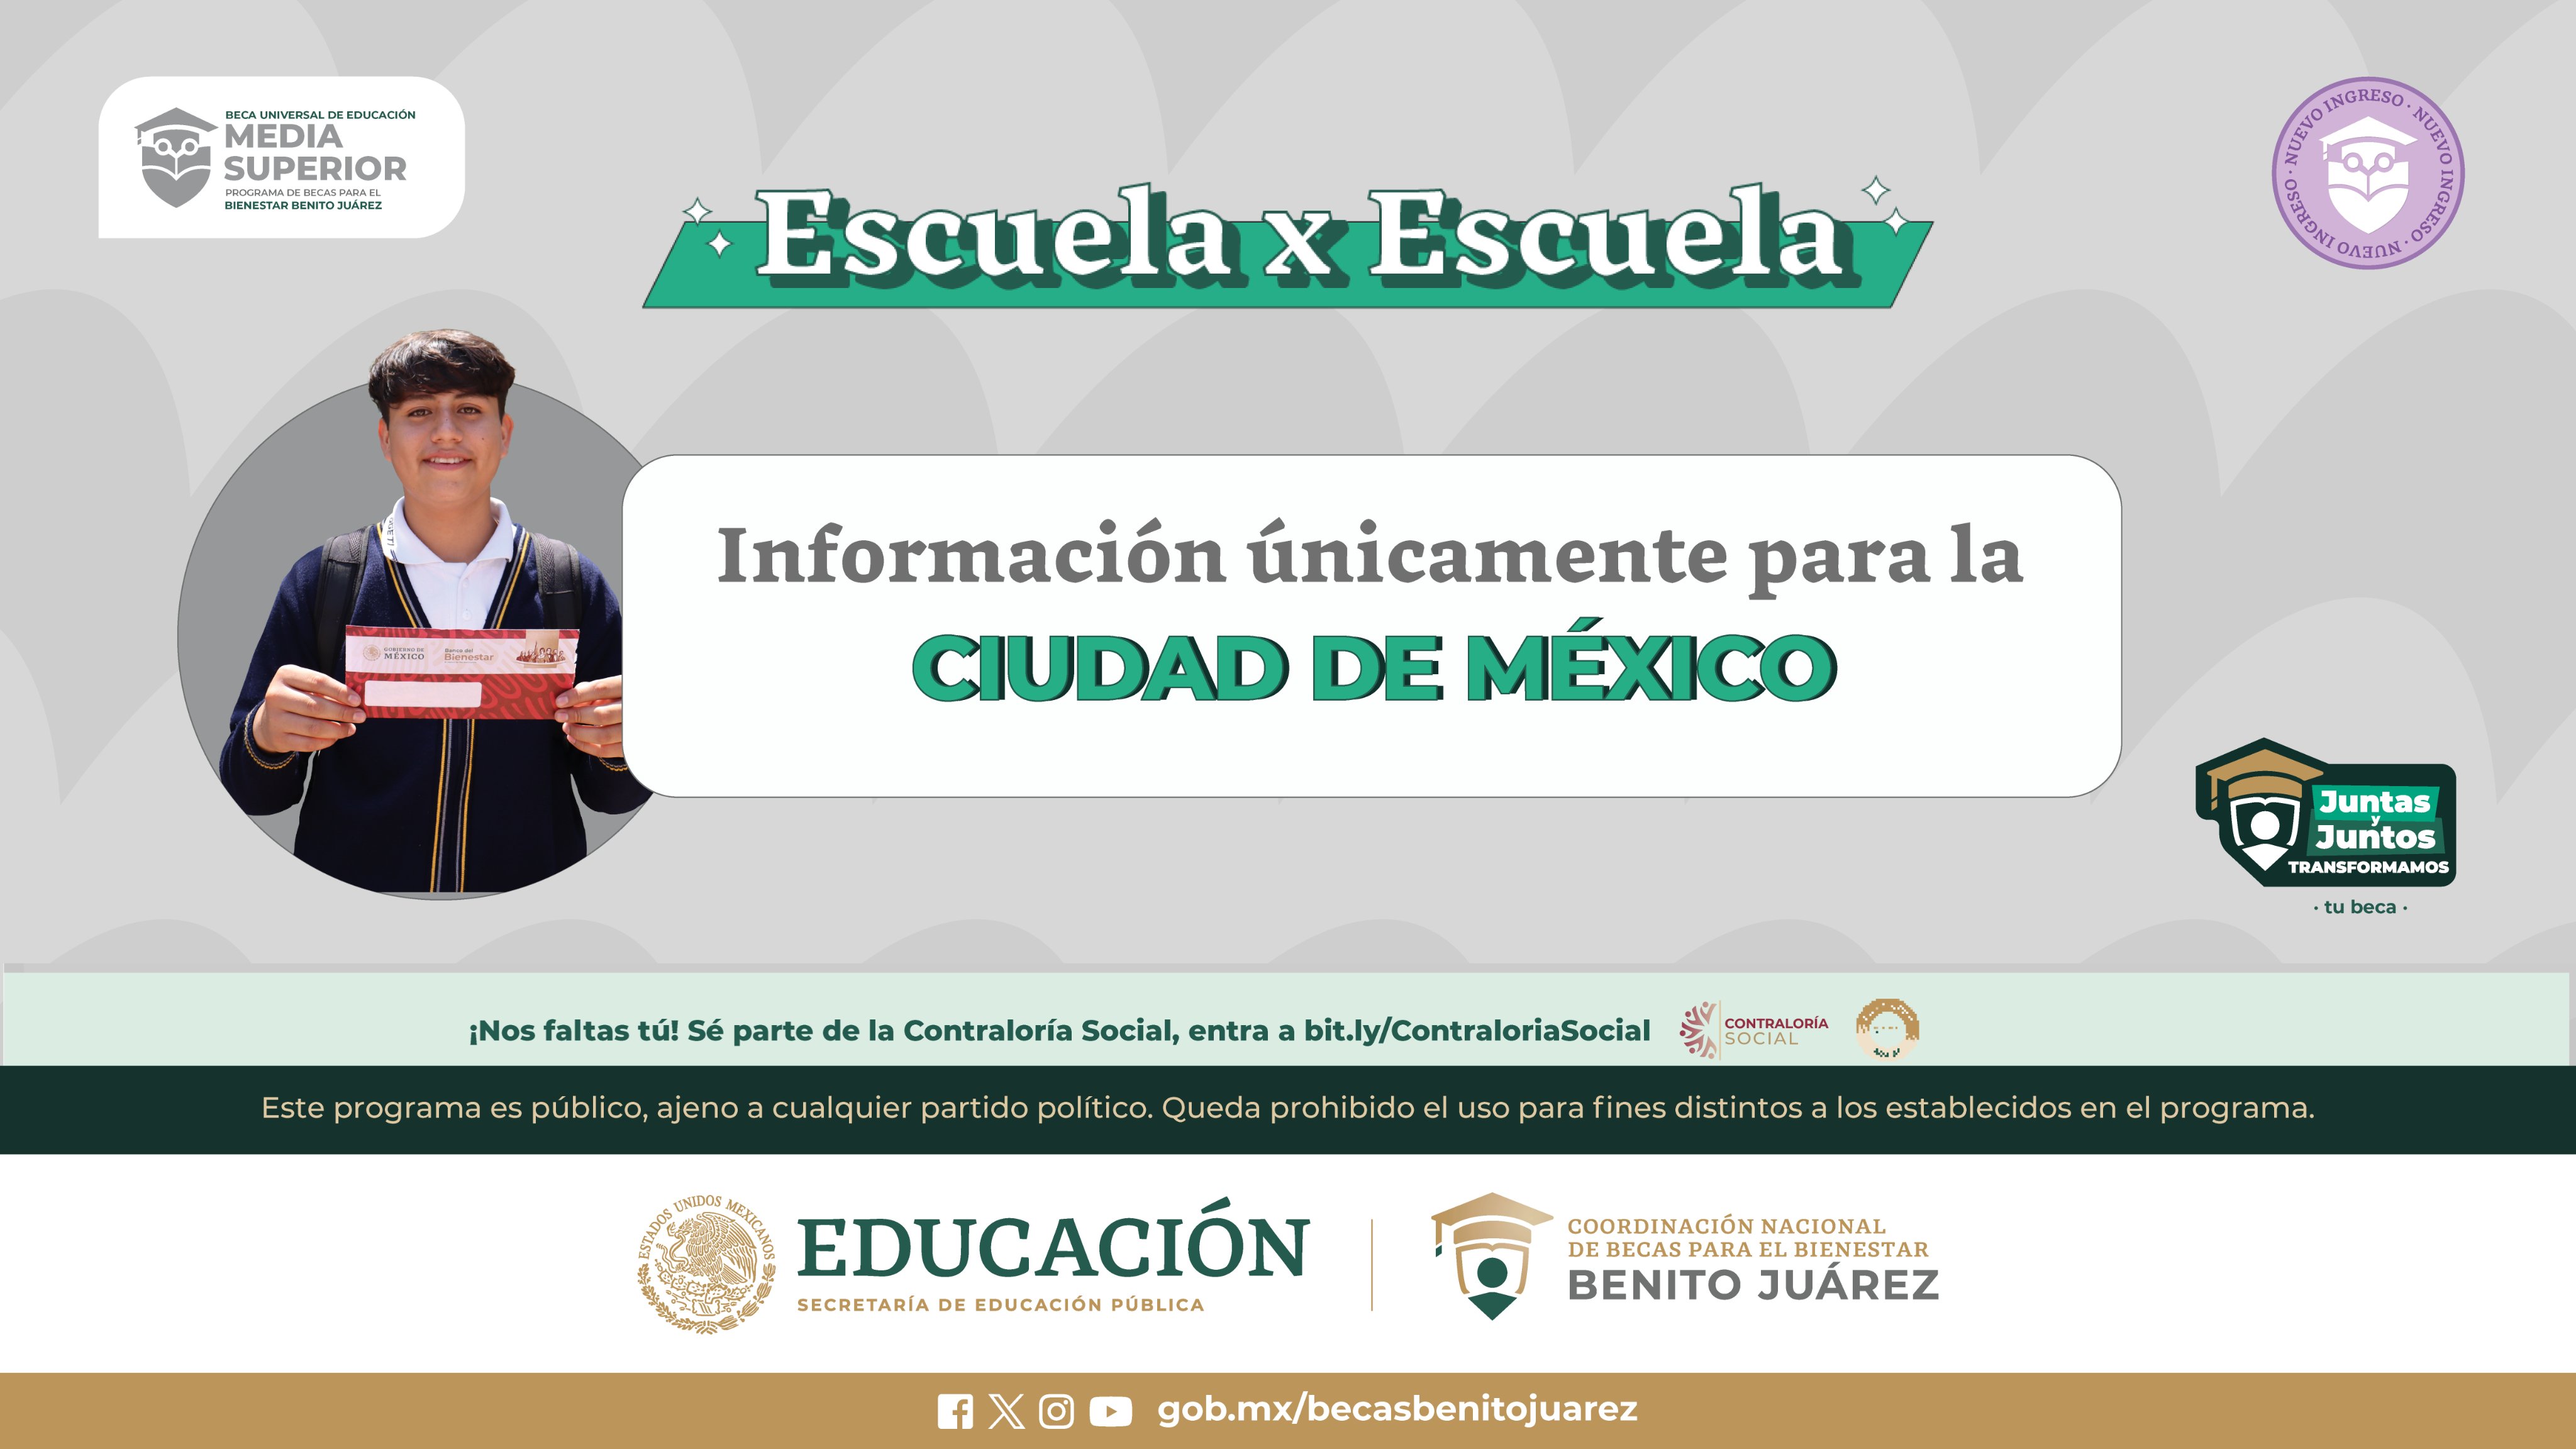 Visitarán las escuelas de Ciudad de México para entregar la Tarjeta del Bienestar a los nuevos miembros del programa. X/@BecasBenito